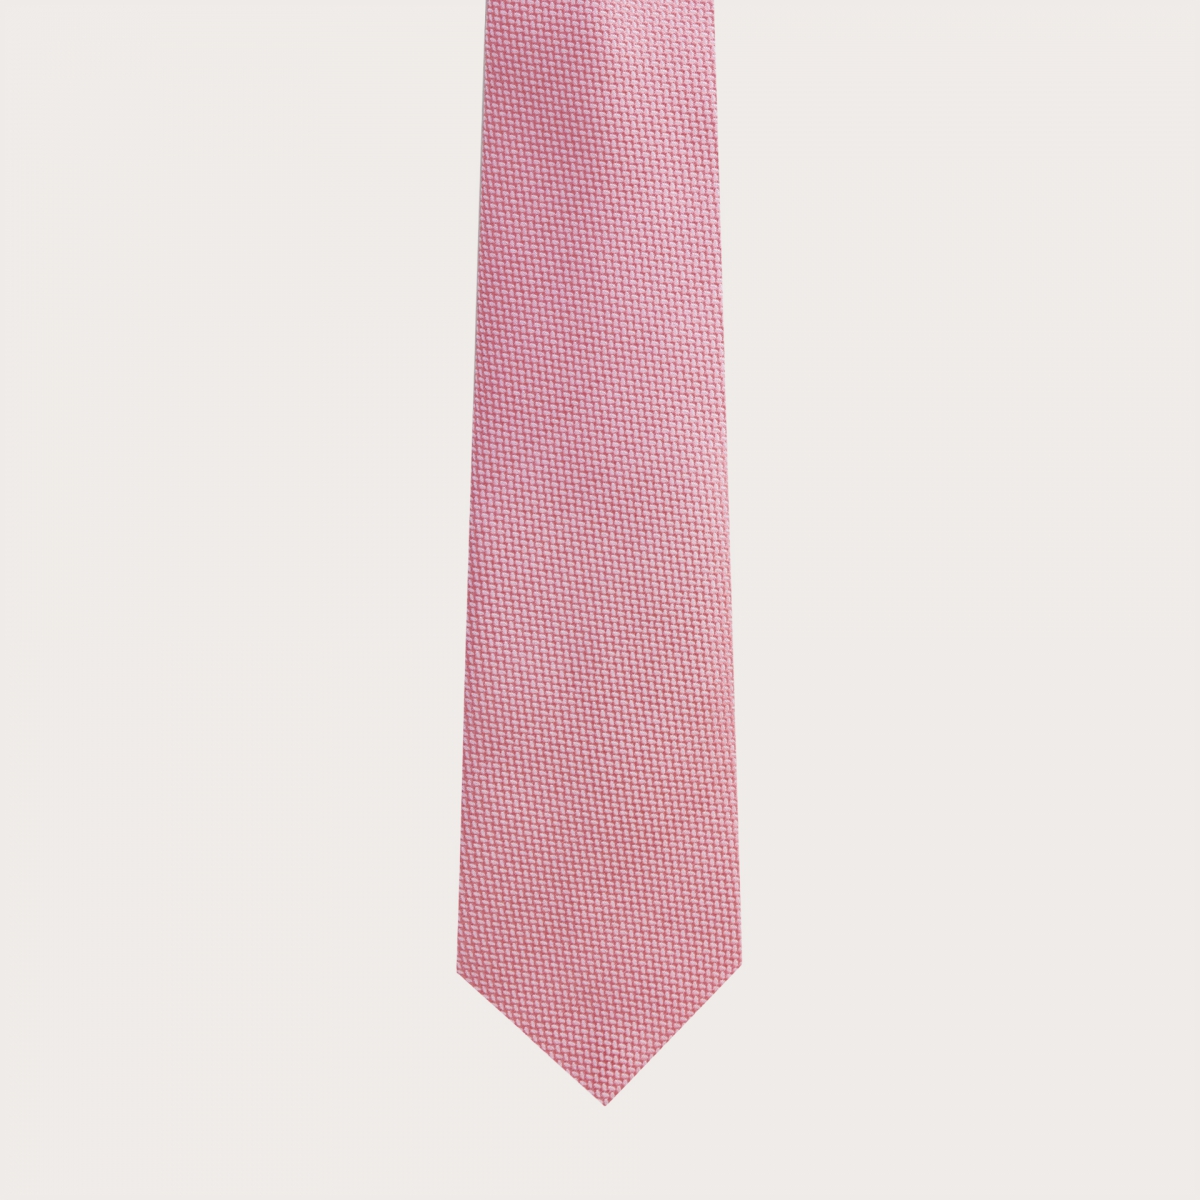 Krawatte aus Jacquard-Seide, rosa